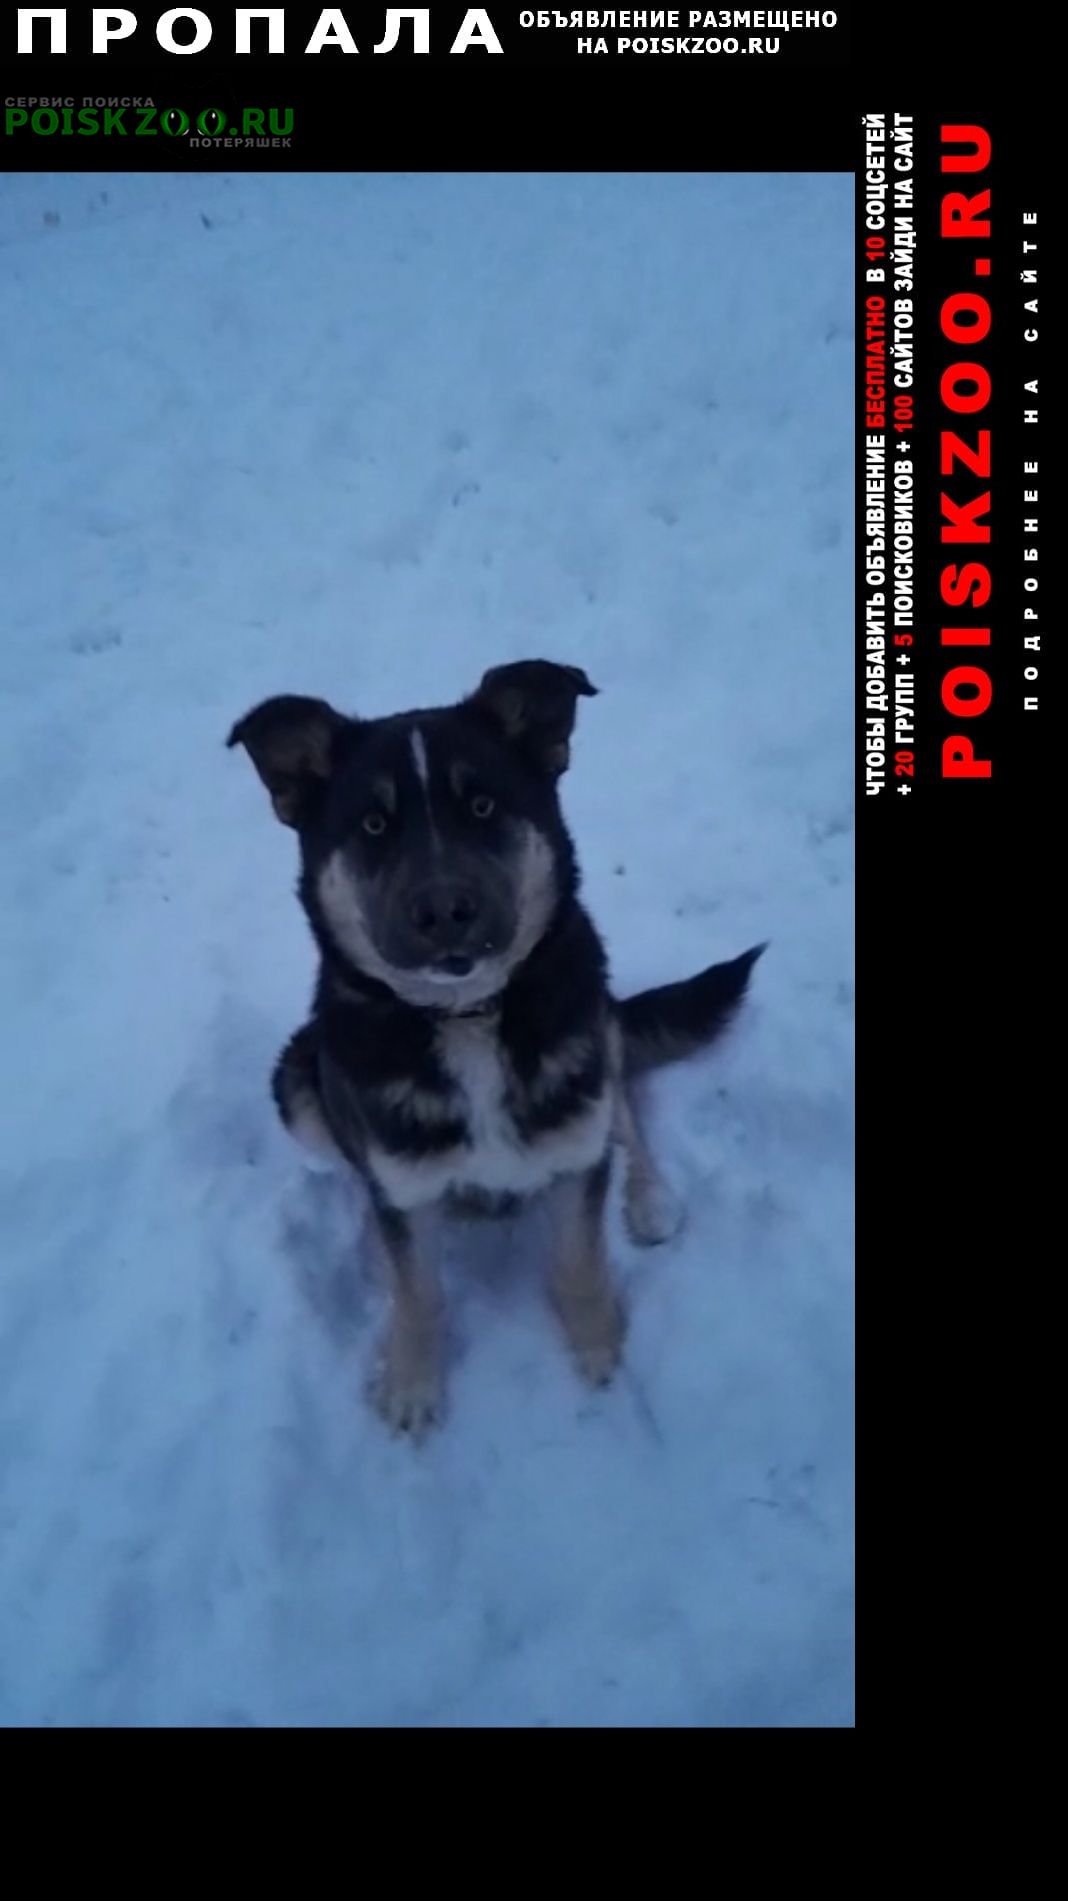 Переславль-Залесский Пропала собака помогите найти